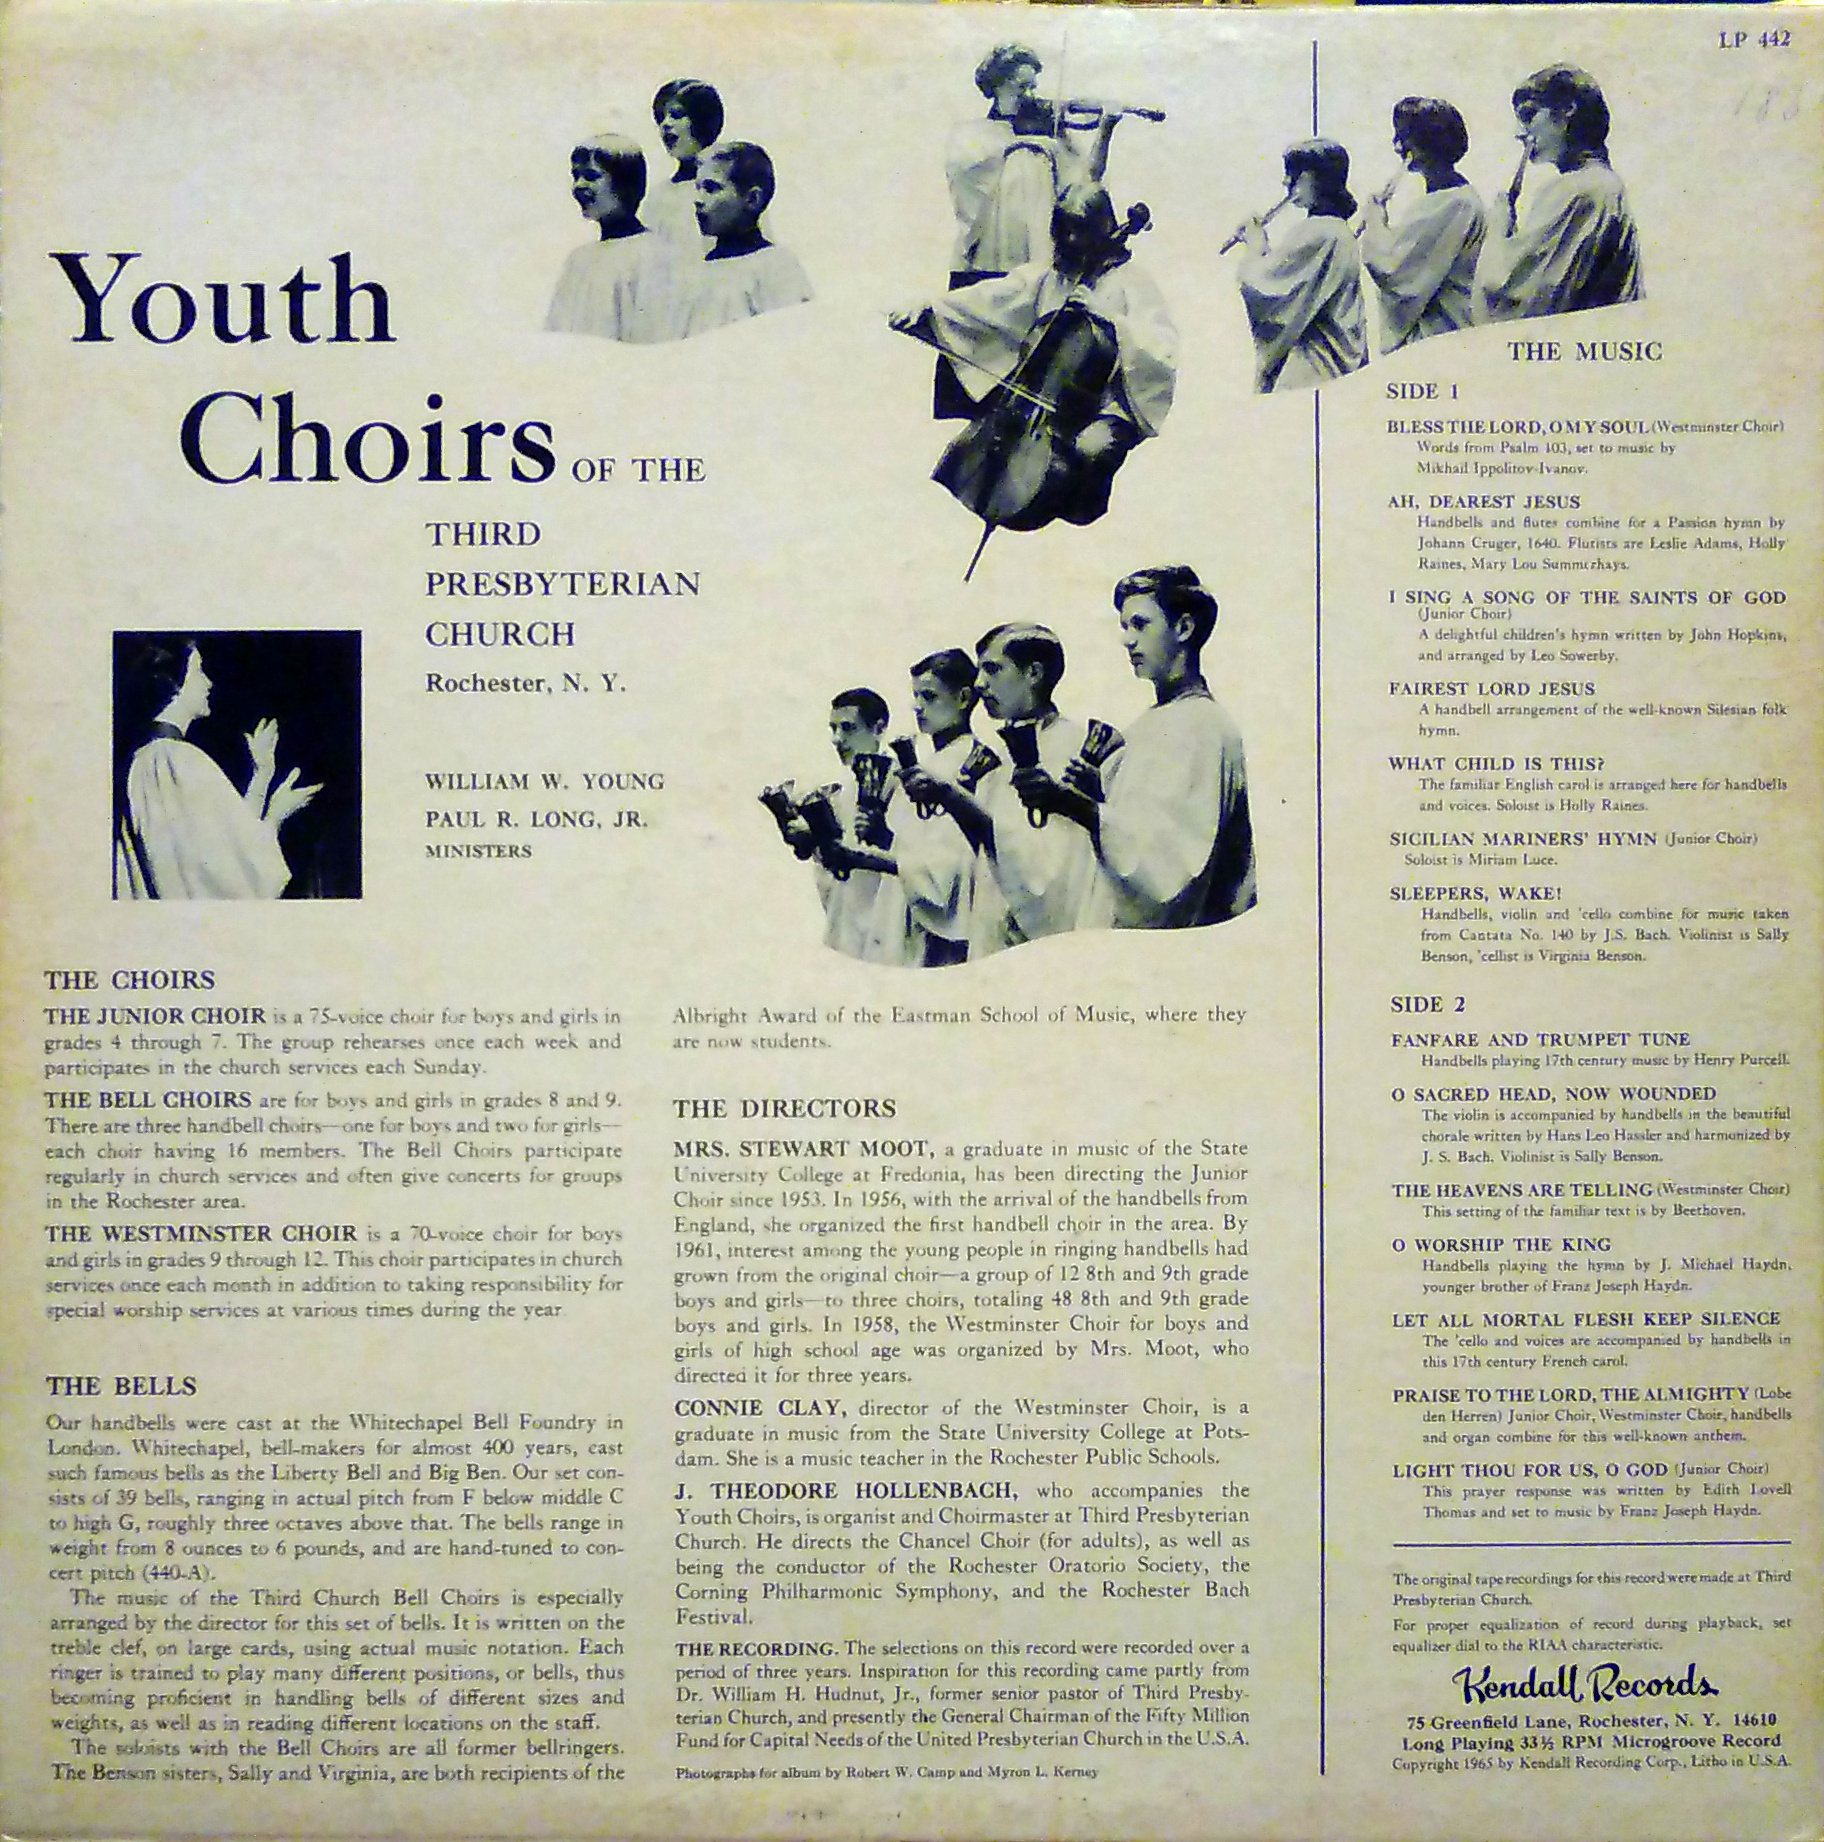 Youth choirs, Third Presbyterian Church, Rochester, N.Y., side 2.